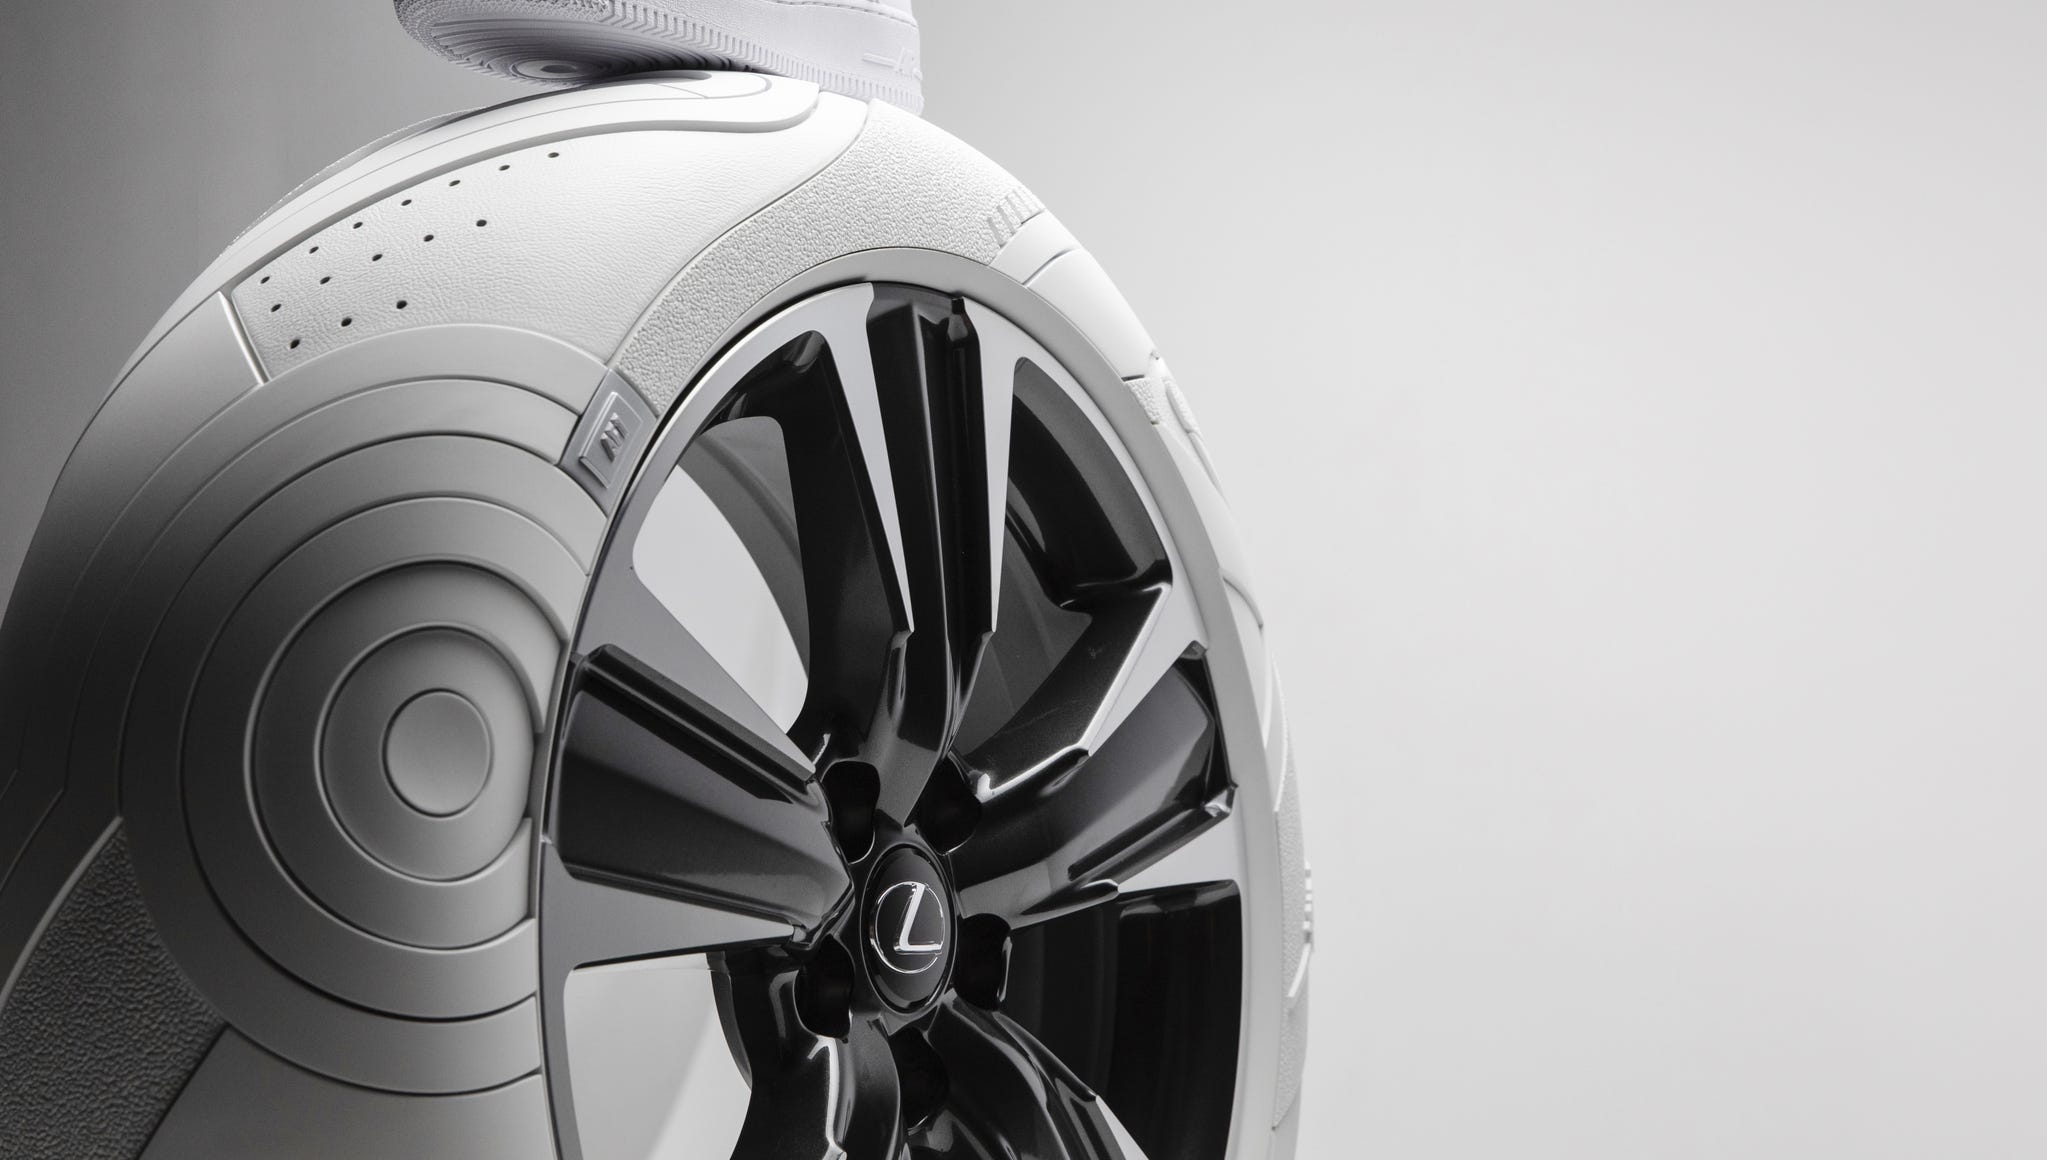 Lexus UX wears tires inspired by Elliott's Nike AF1